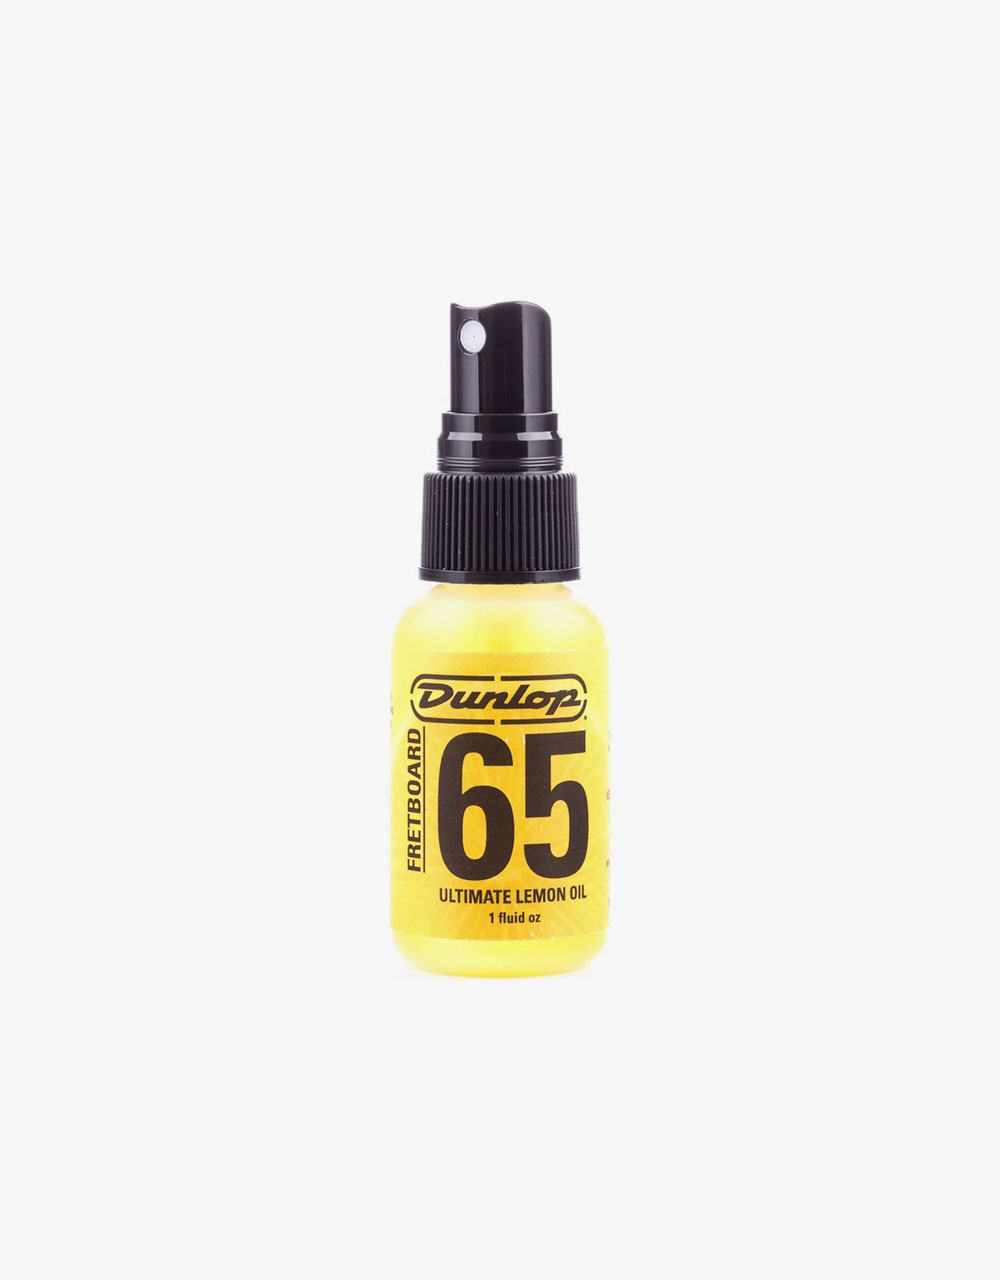 Лимонное масло Dunlop 6551J Fretboard 65 Ultimate Lemon Oil - купить в "Гитарном Клубе"